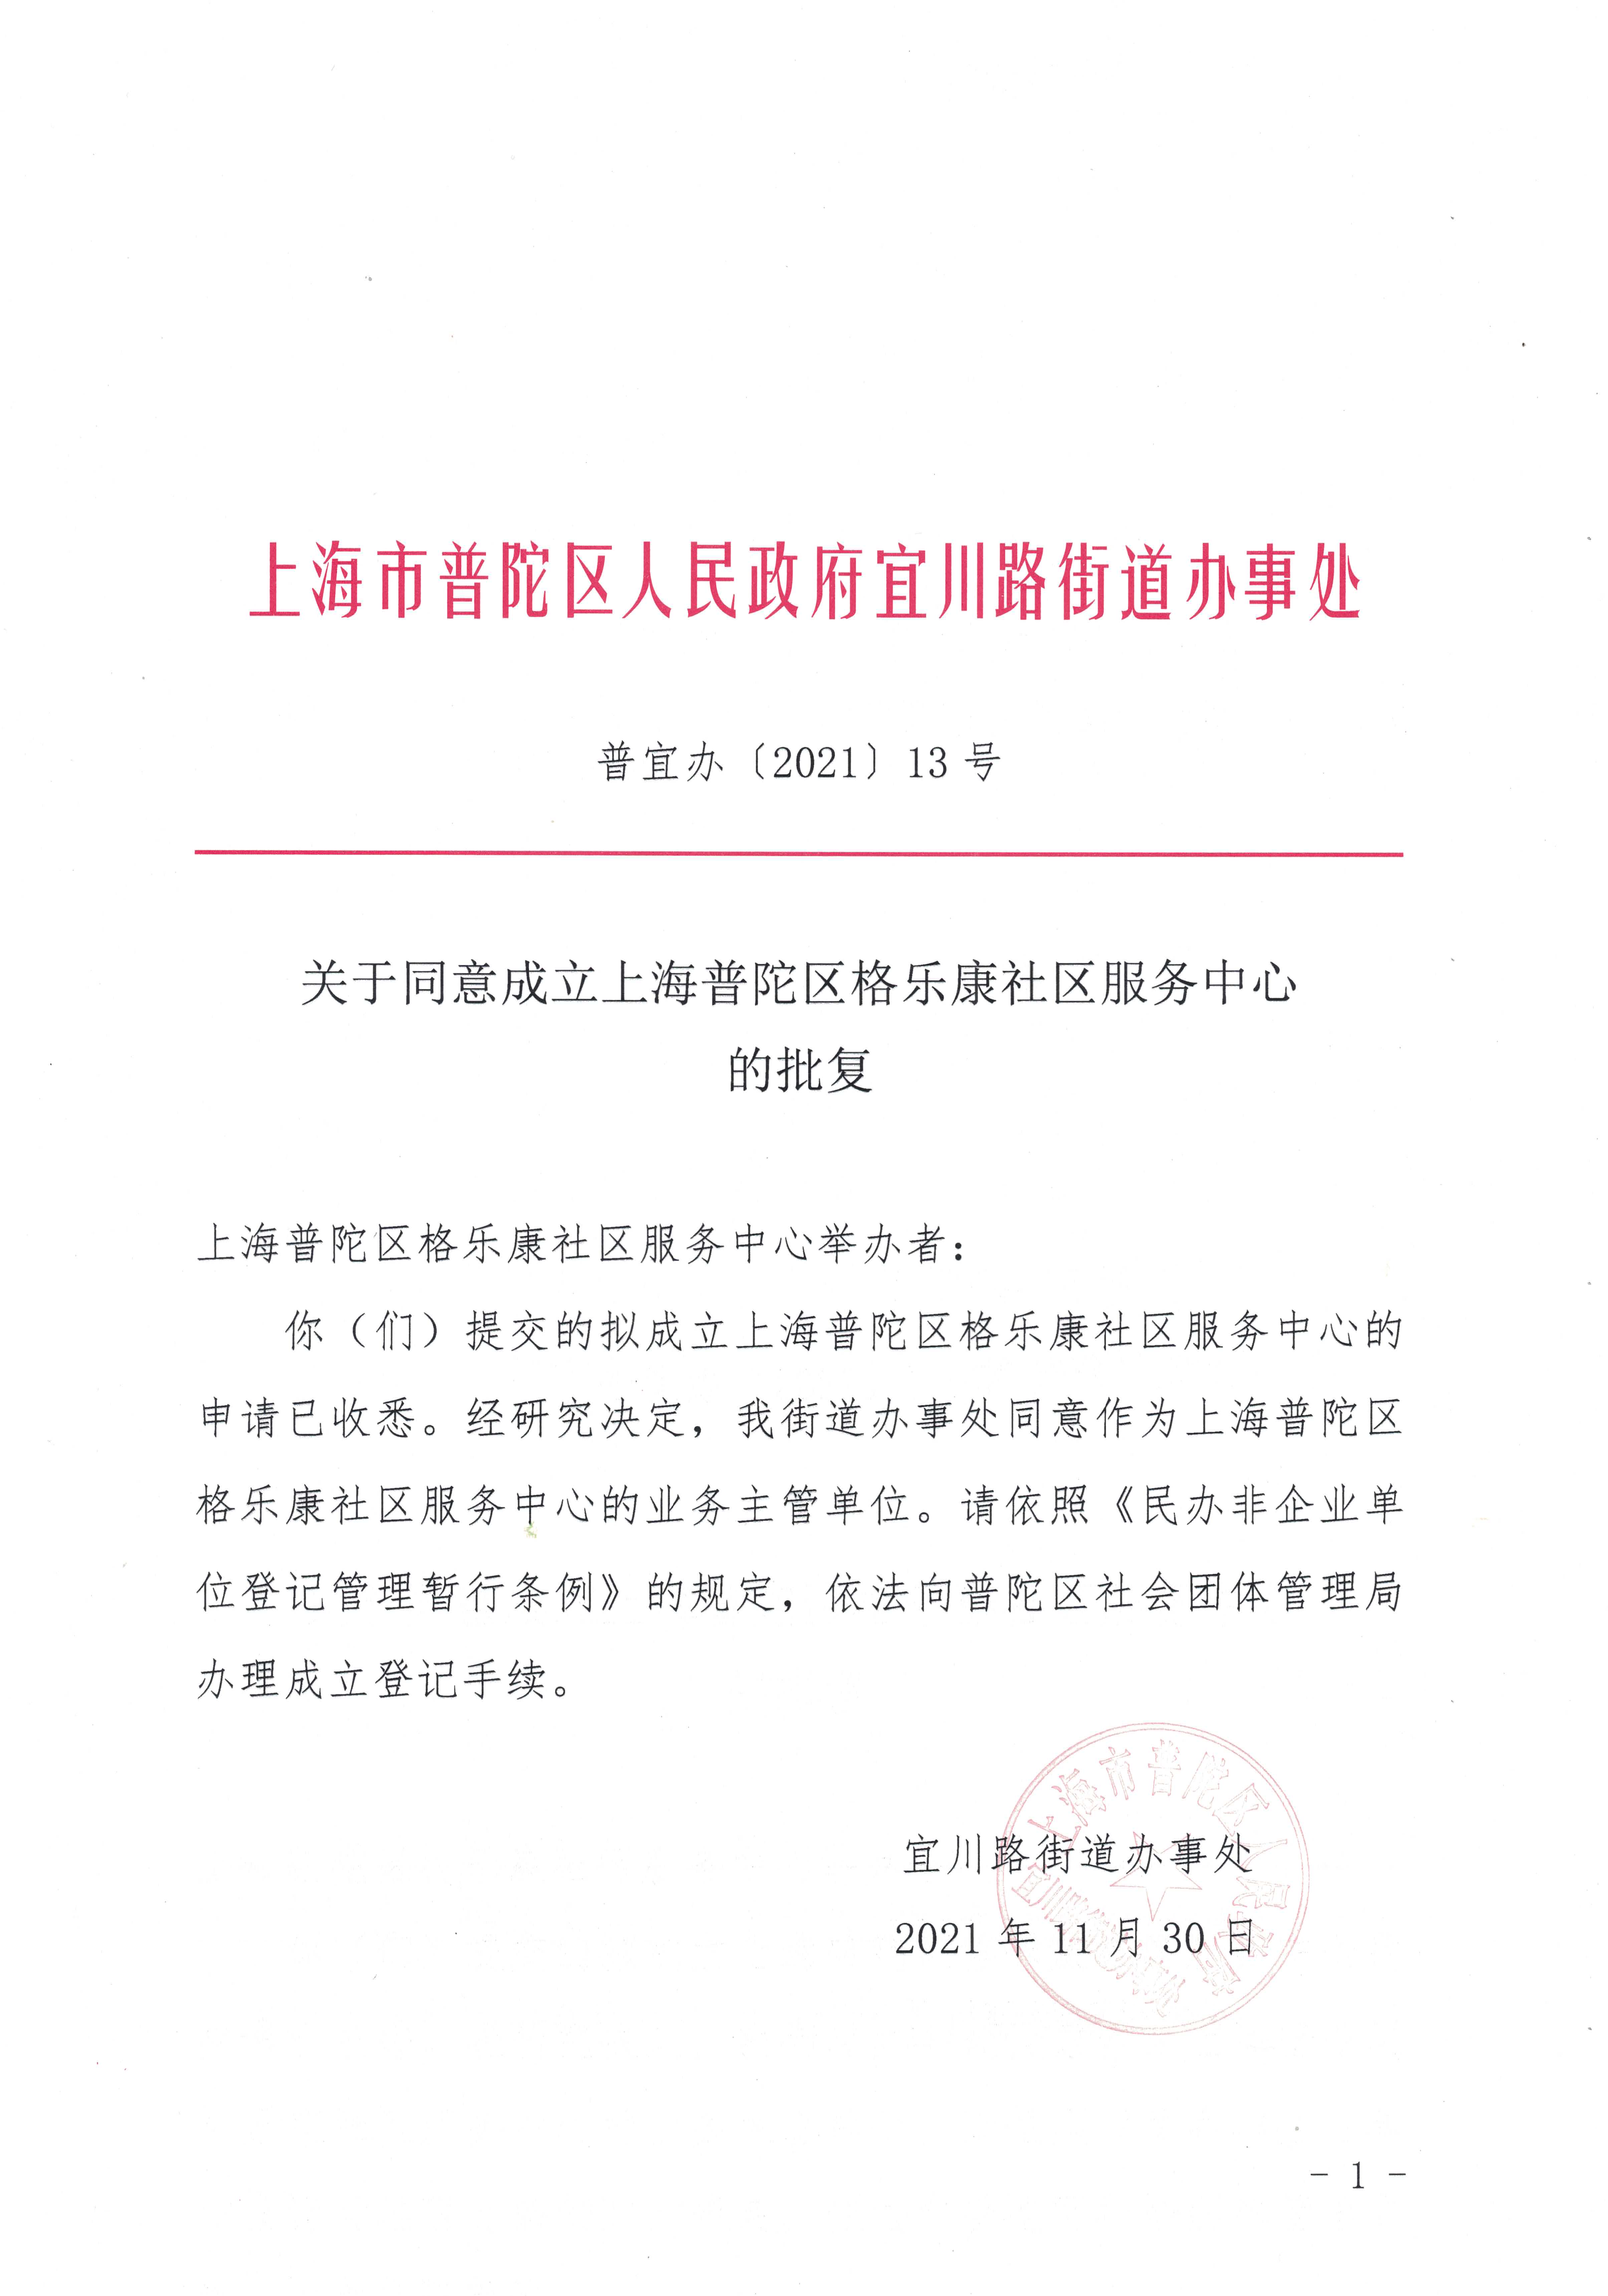 关于同意成立上海普陀区格乐康社区服务中心的批复